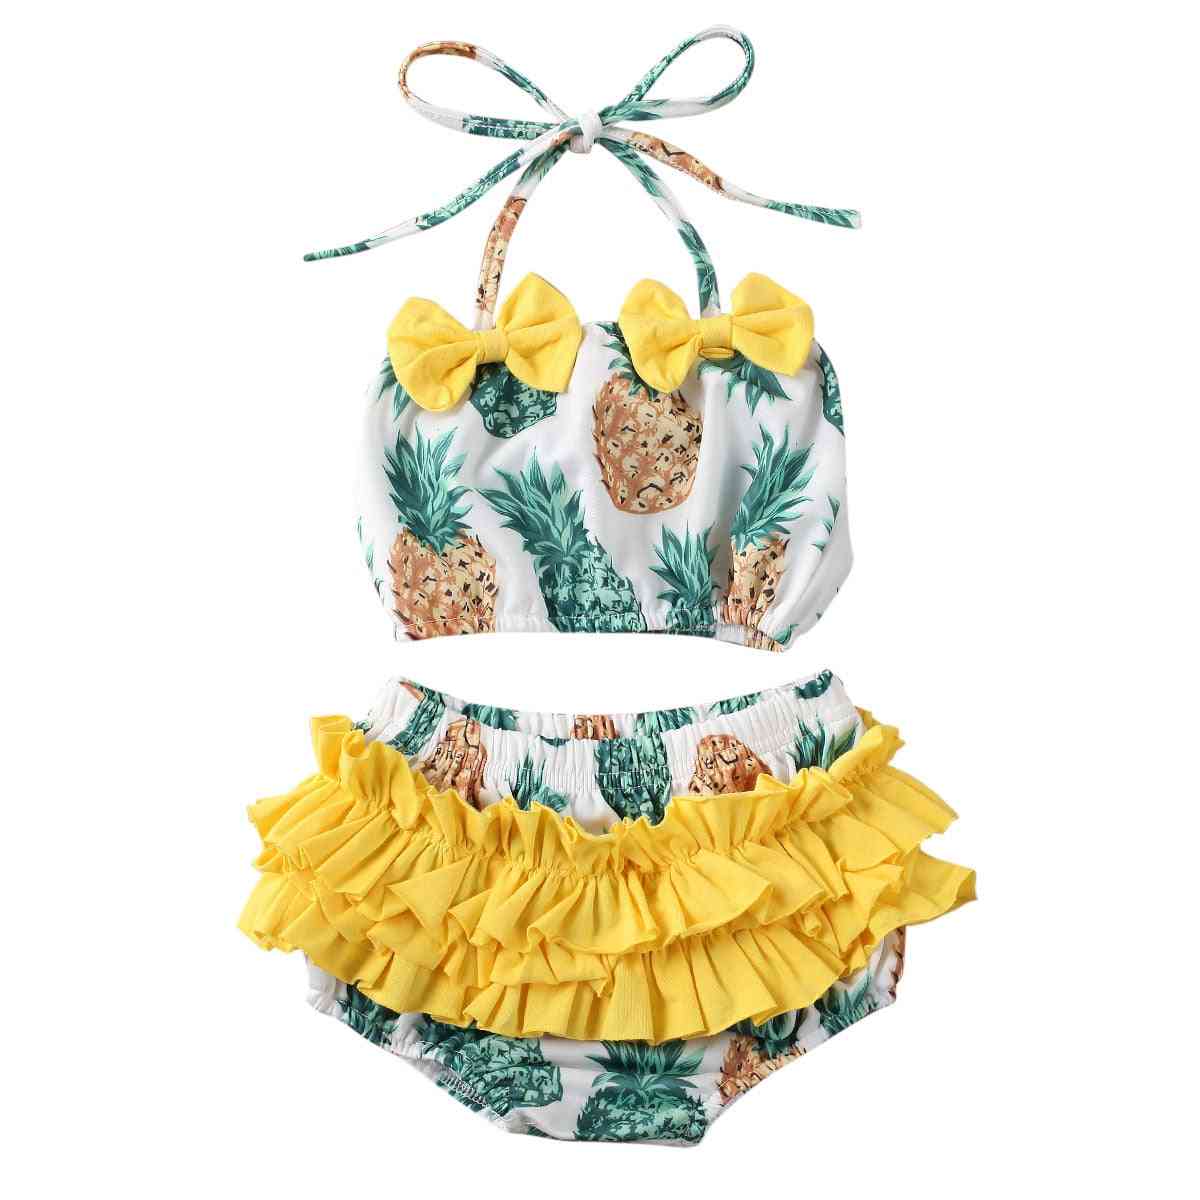 Fată bebeluș vara costum de baie cu imprimeu ananas și pepene verde, bikini pentru copii, costum de baie cu volan